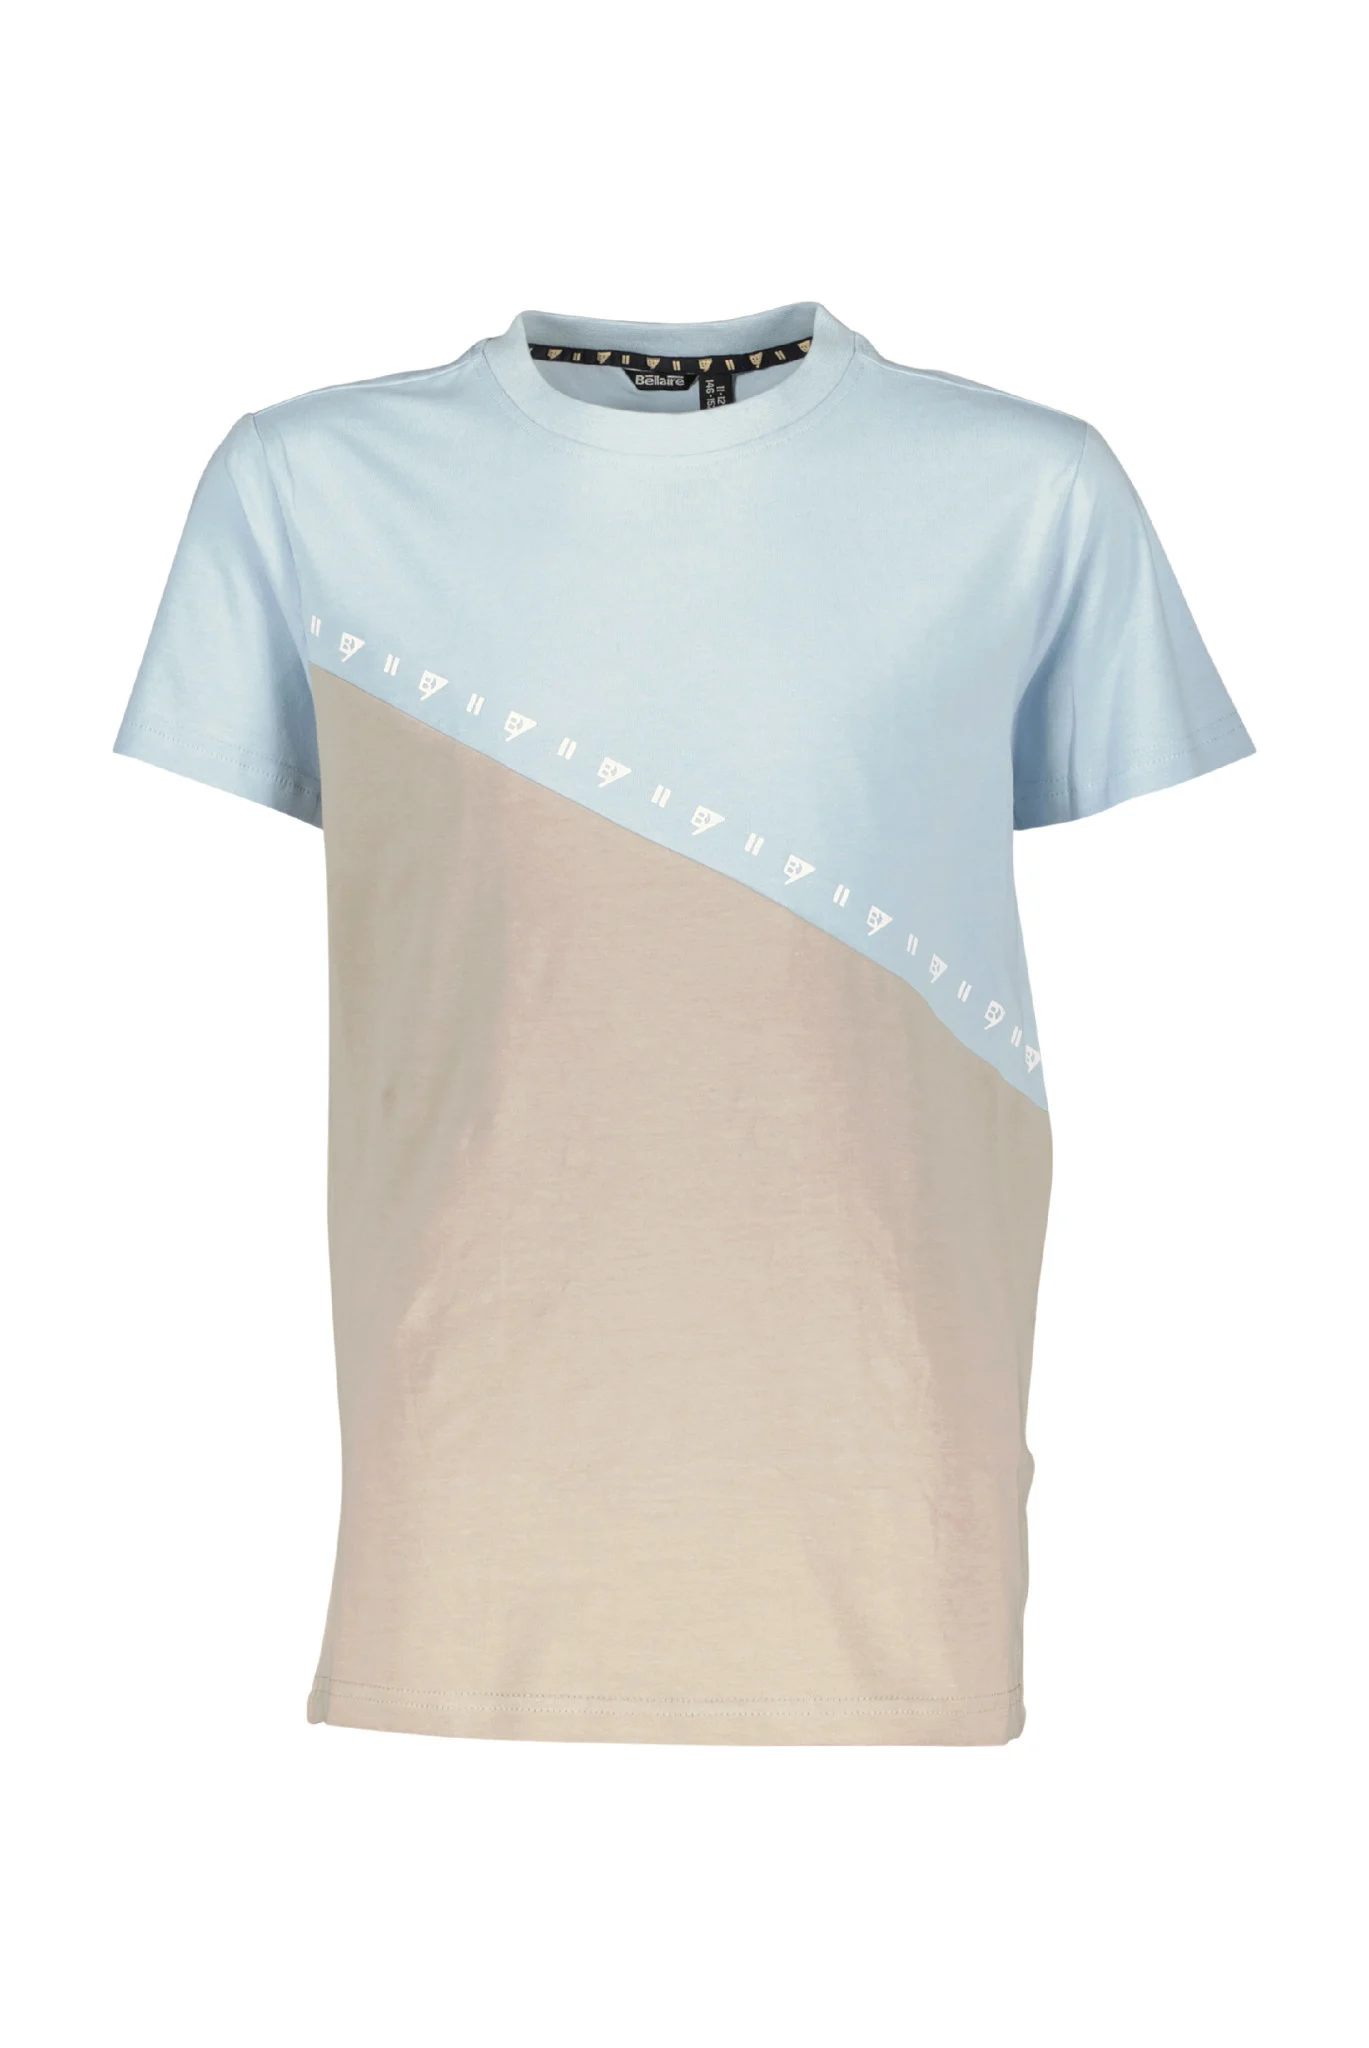 Afbeelding van Bellaire Jongens t-shirt diagonaal colorblock angel falls